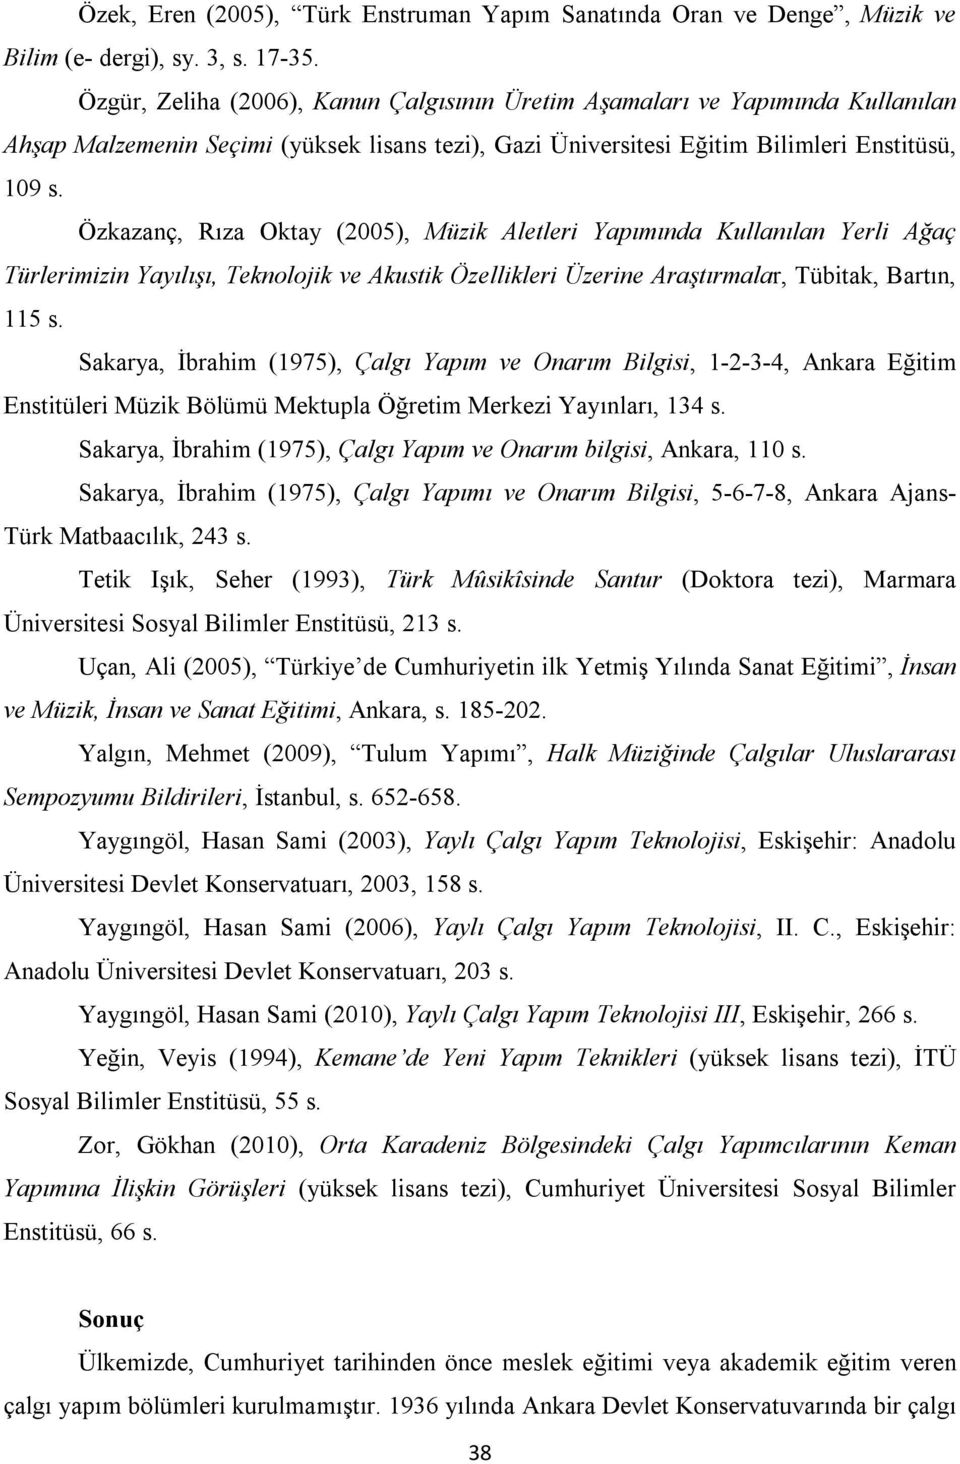 Özkazanç, Rıza Oktay (2005), Müzik Aletleri Yapımında Kullanılan Yerli Ağaç Türlerimizin Yayılışı, Teknolojik ve Akustik Özellikleri Üzerine Araştırmalar, Tübitak, Bartın, 115 s.